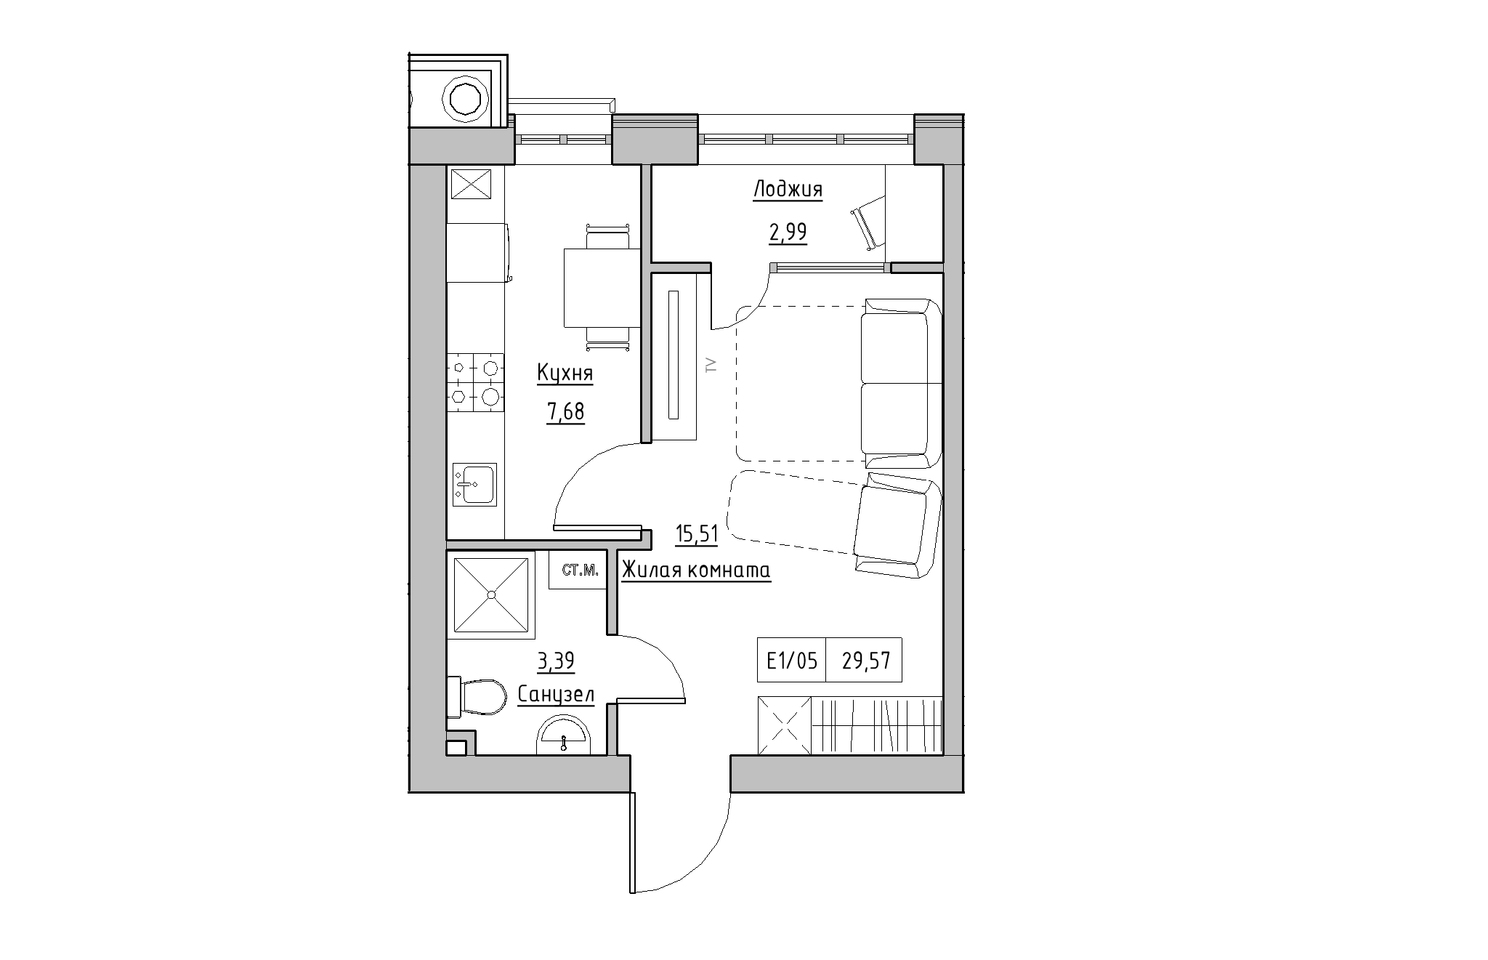 Планування 1-к квартира площею 29.57м2, KS-010-03/0006.